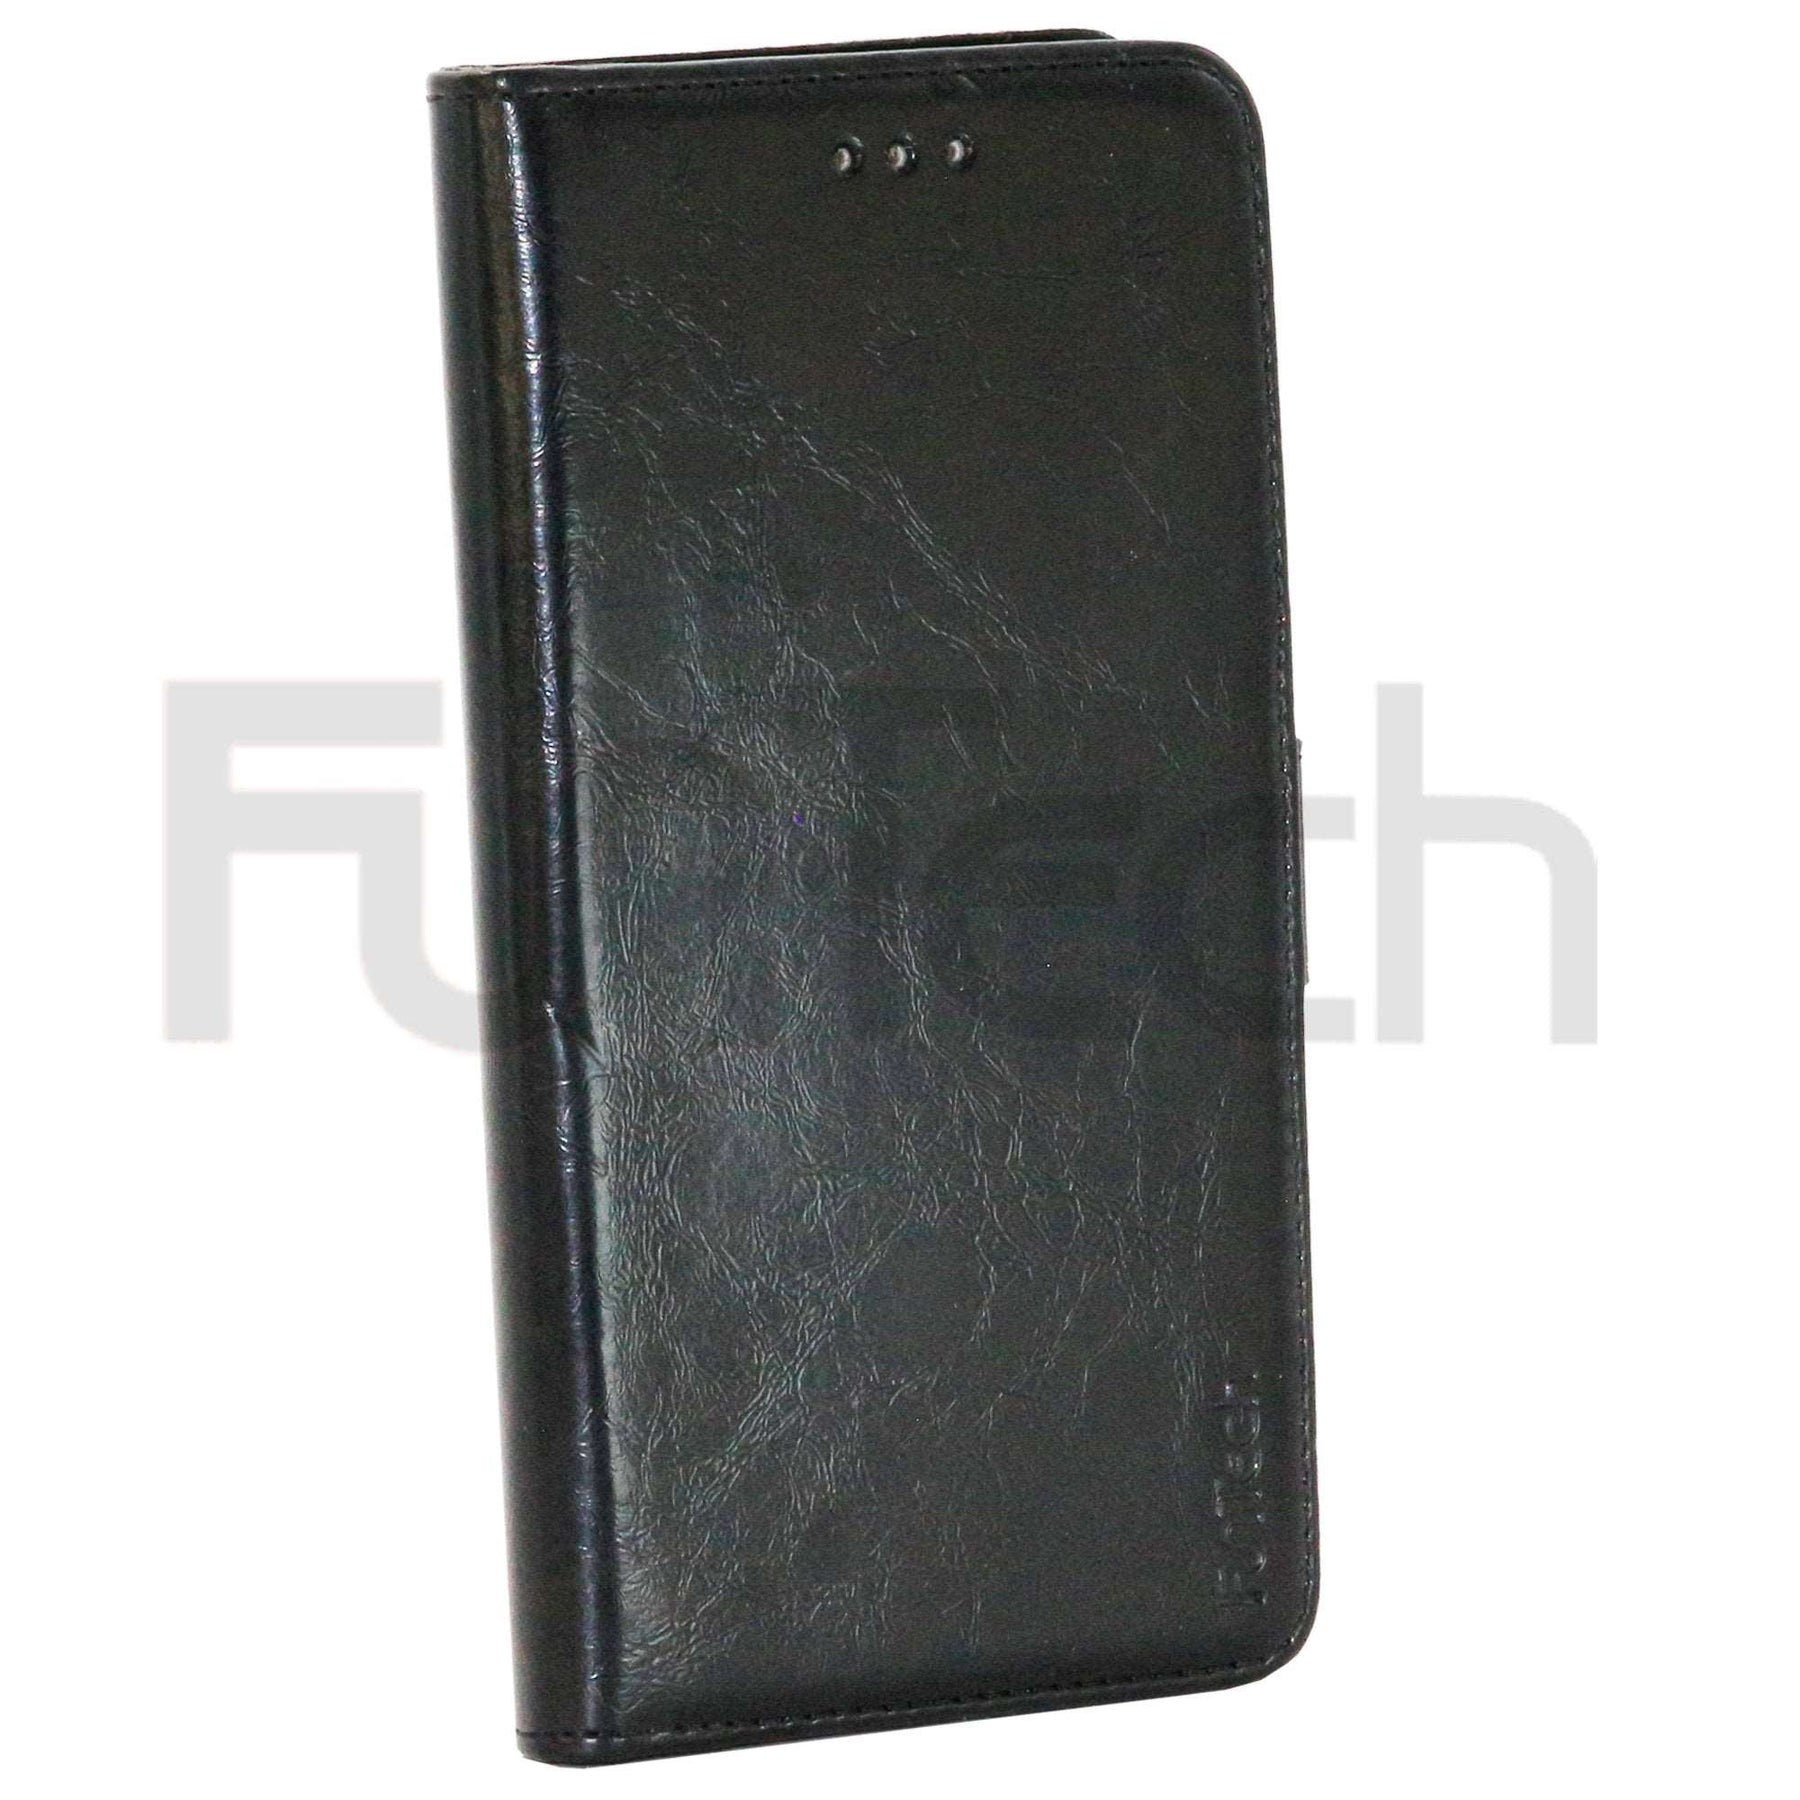 Apple iPhone XR Wallet Flip Case Black